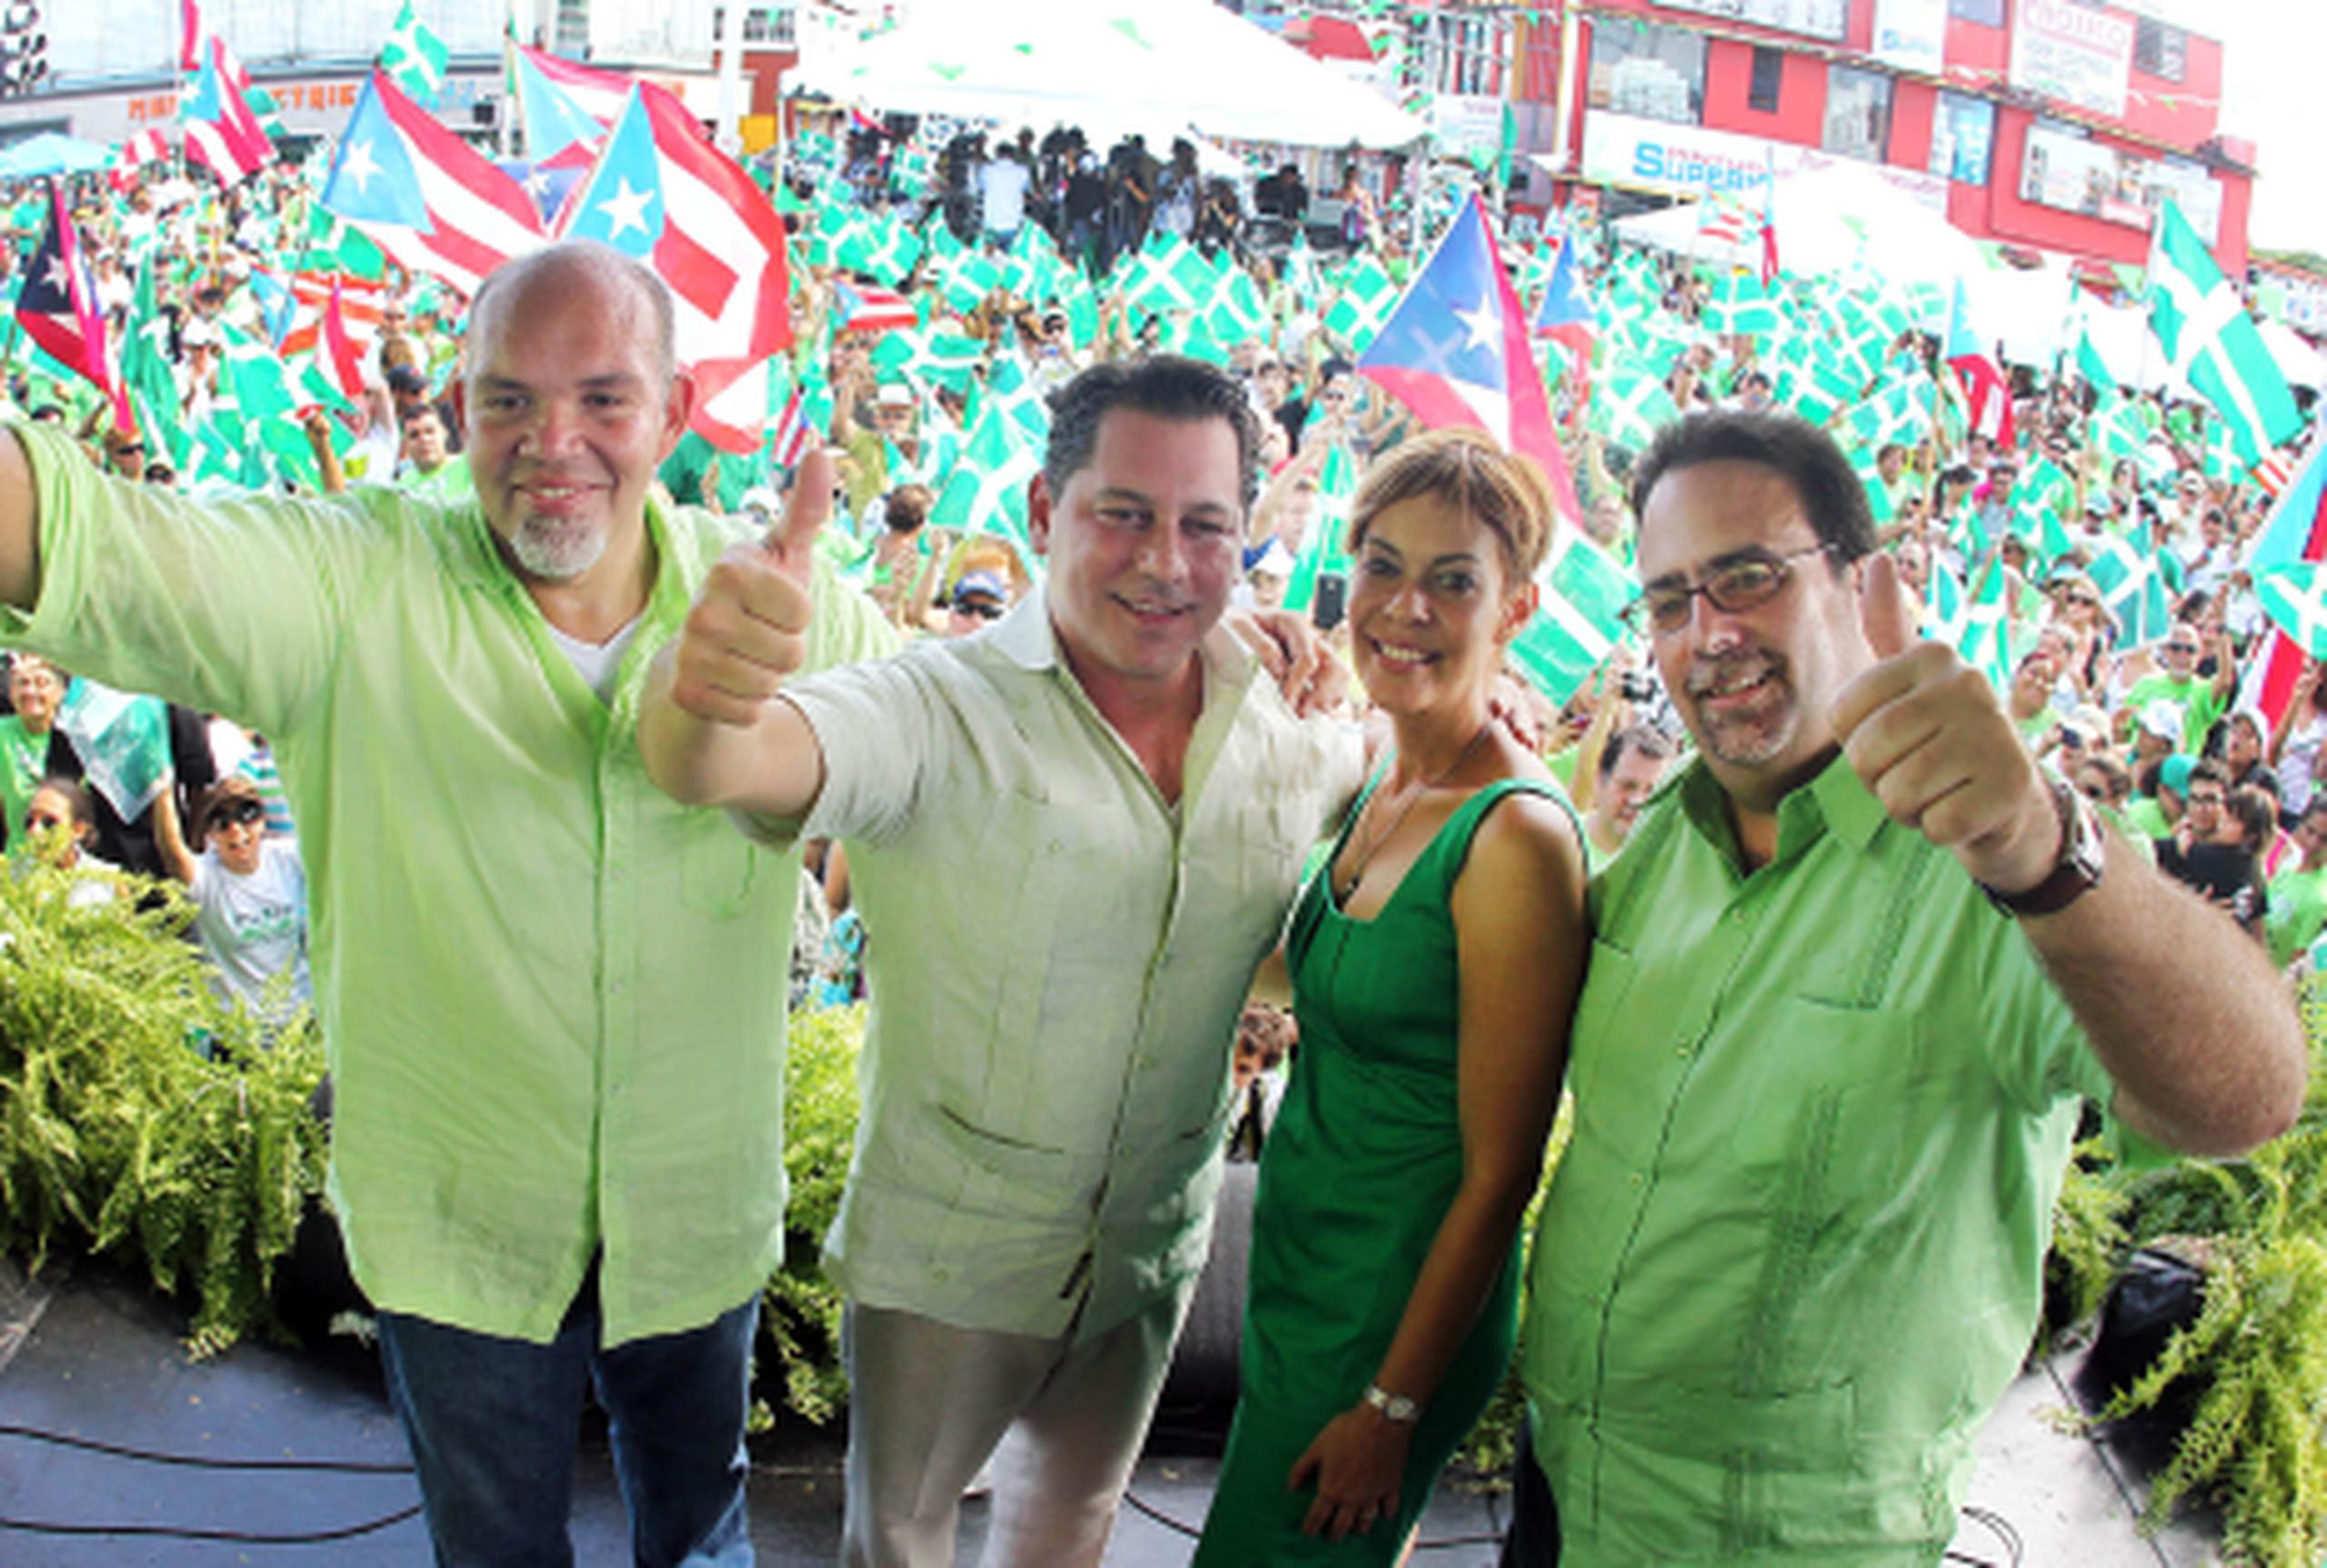 Durante el cierre de campaña, fueron múltiples las referencias al “nuevo impulso independentista”, e incluso Berríos Martínez, quien presentó en la tarima a Dalmau, dijo que una de sus más grandes satisfacciones ha sido ver el desarrollo de líderes como el candidato a la gobernación dentro del partido.